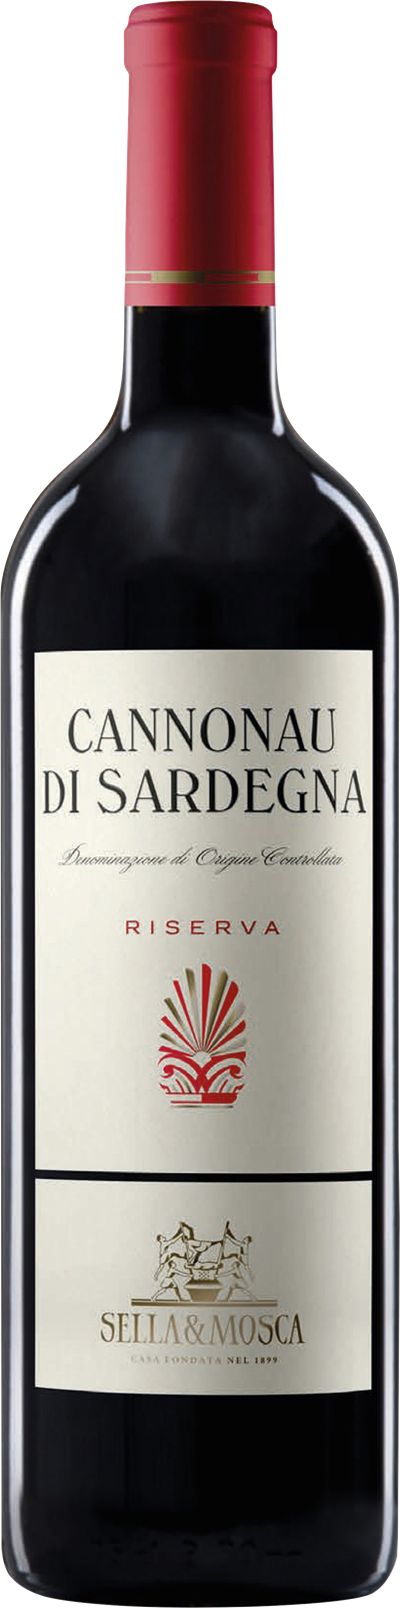 Cannonau di Sardegna Riserva, 2020